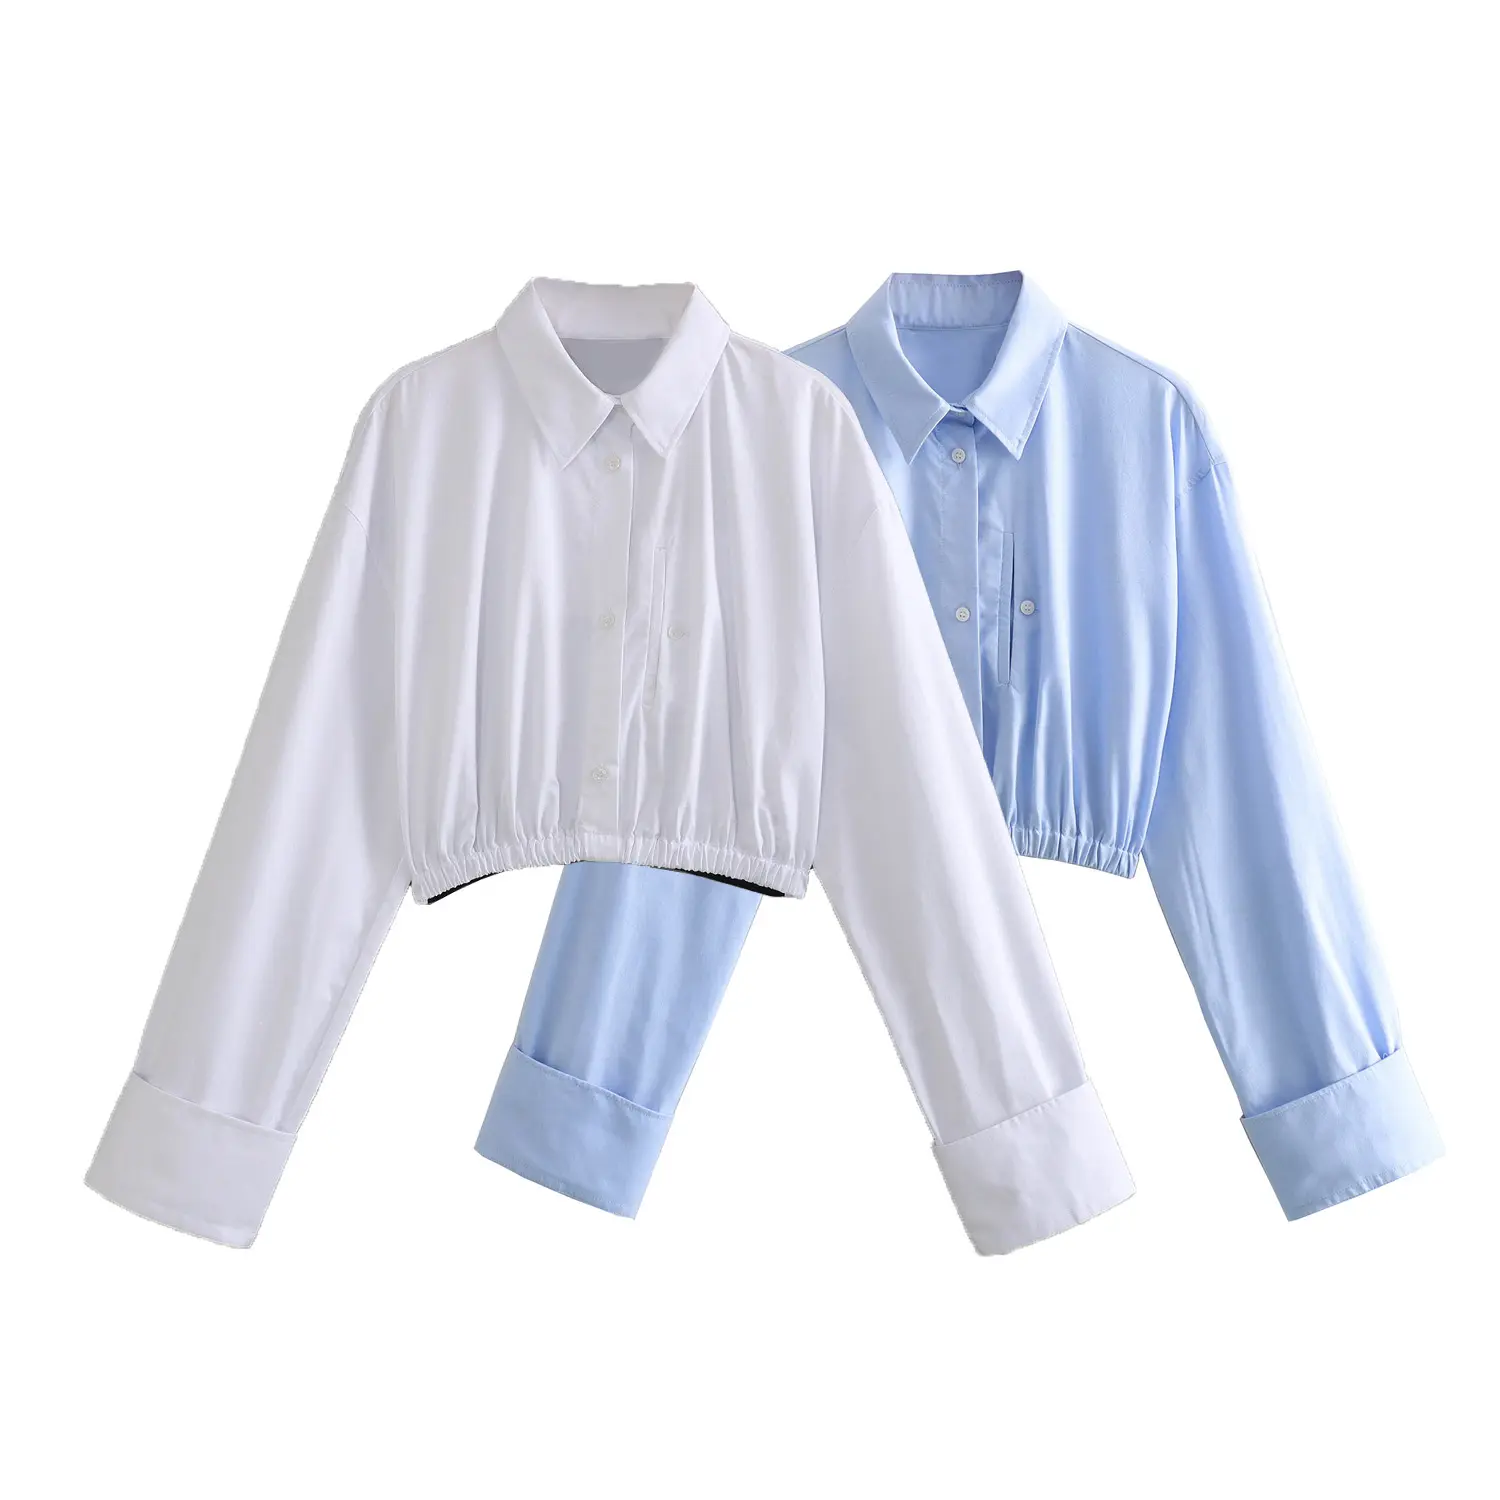 KAOPU ZA-Camisa recortada con dobladillo elástico para mujer, blusas vintage de manga larga con botones, blusas elegantes para mujer